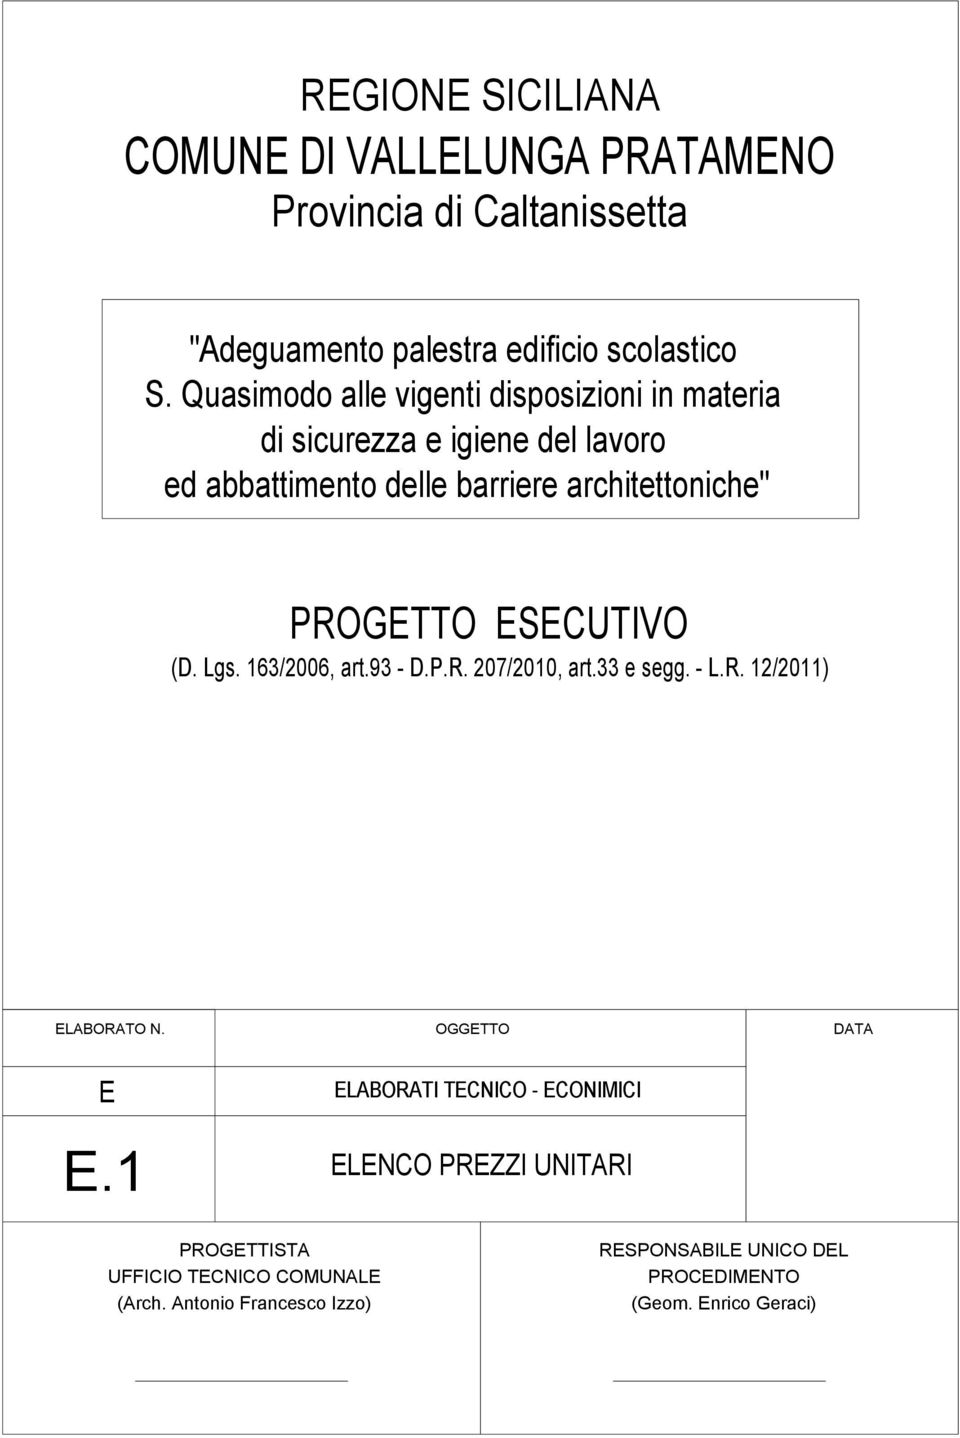 ESECUTIVO (D. Lgs. 163/2006, art.93 - D.P.R. 207/2010, art.33 e segg. - L.R. 12/2011) ELABORATO N.